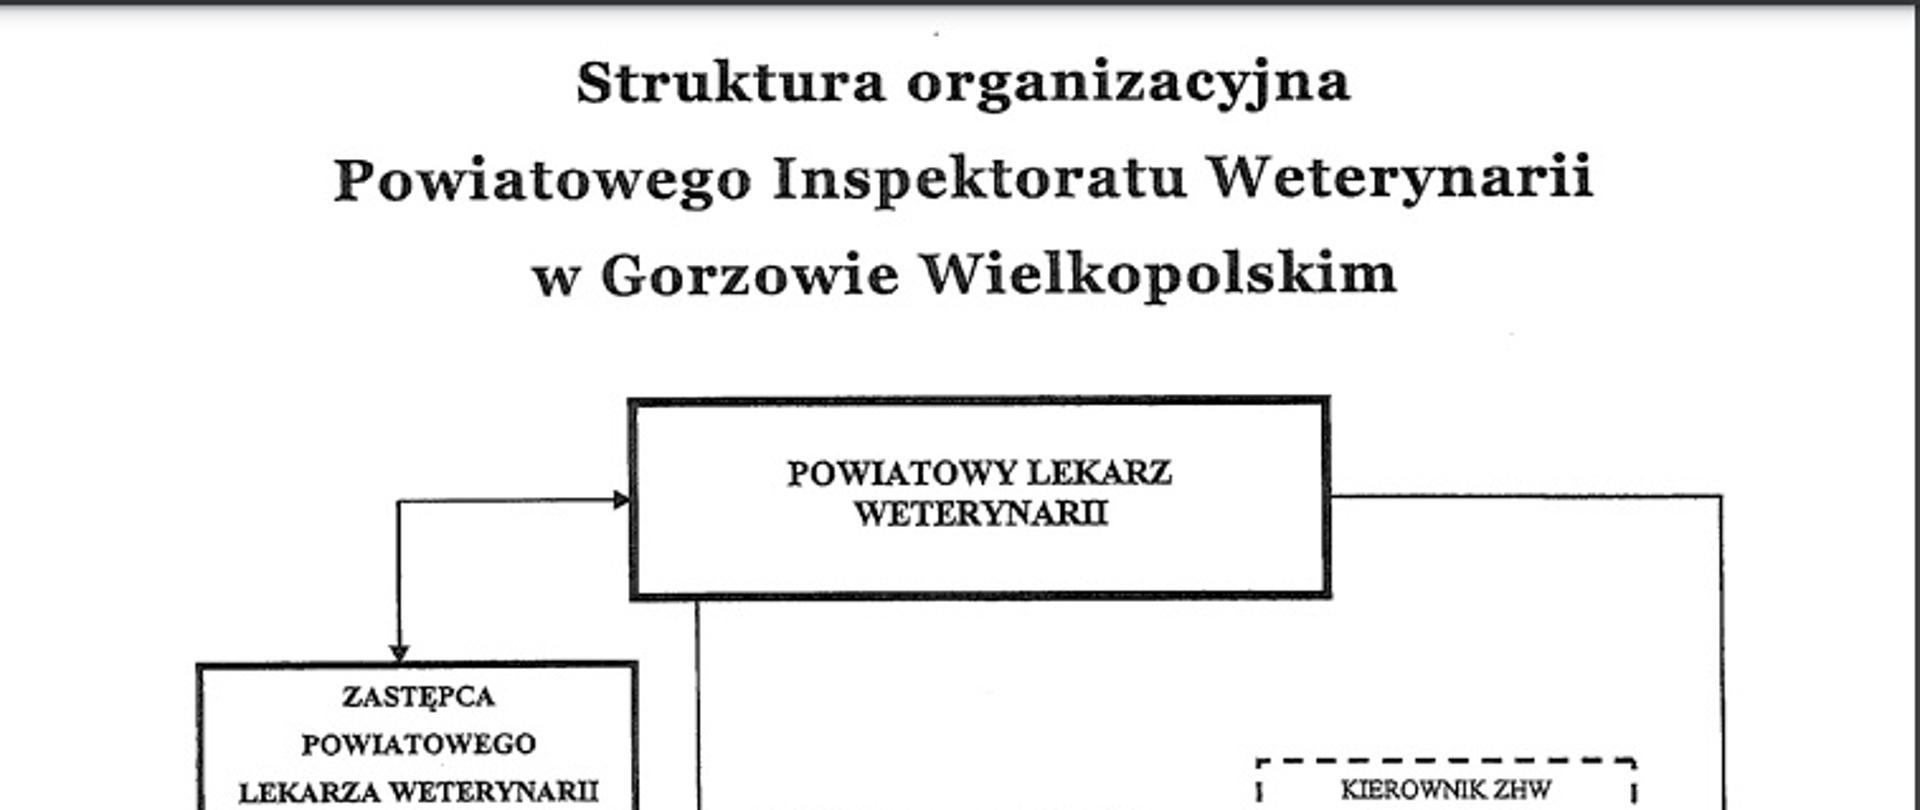  Struktura organizacyjna PIW